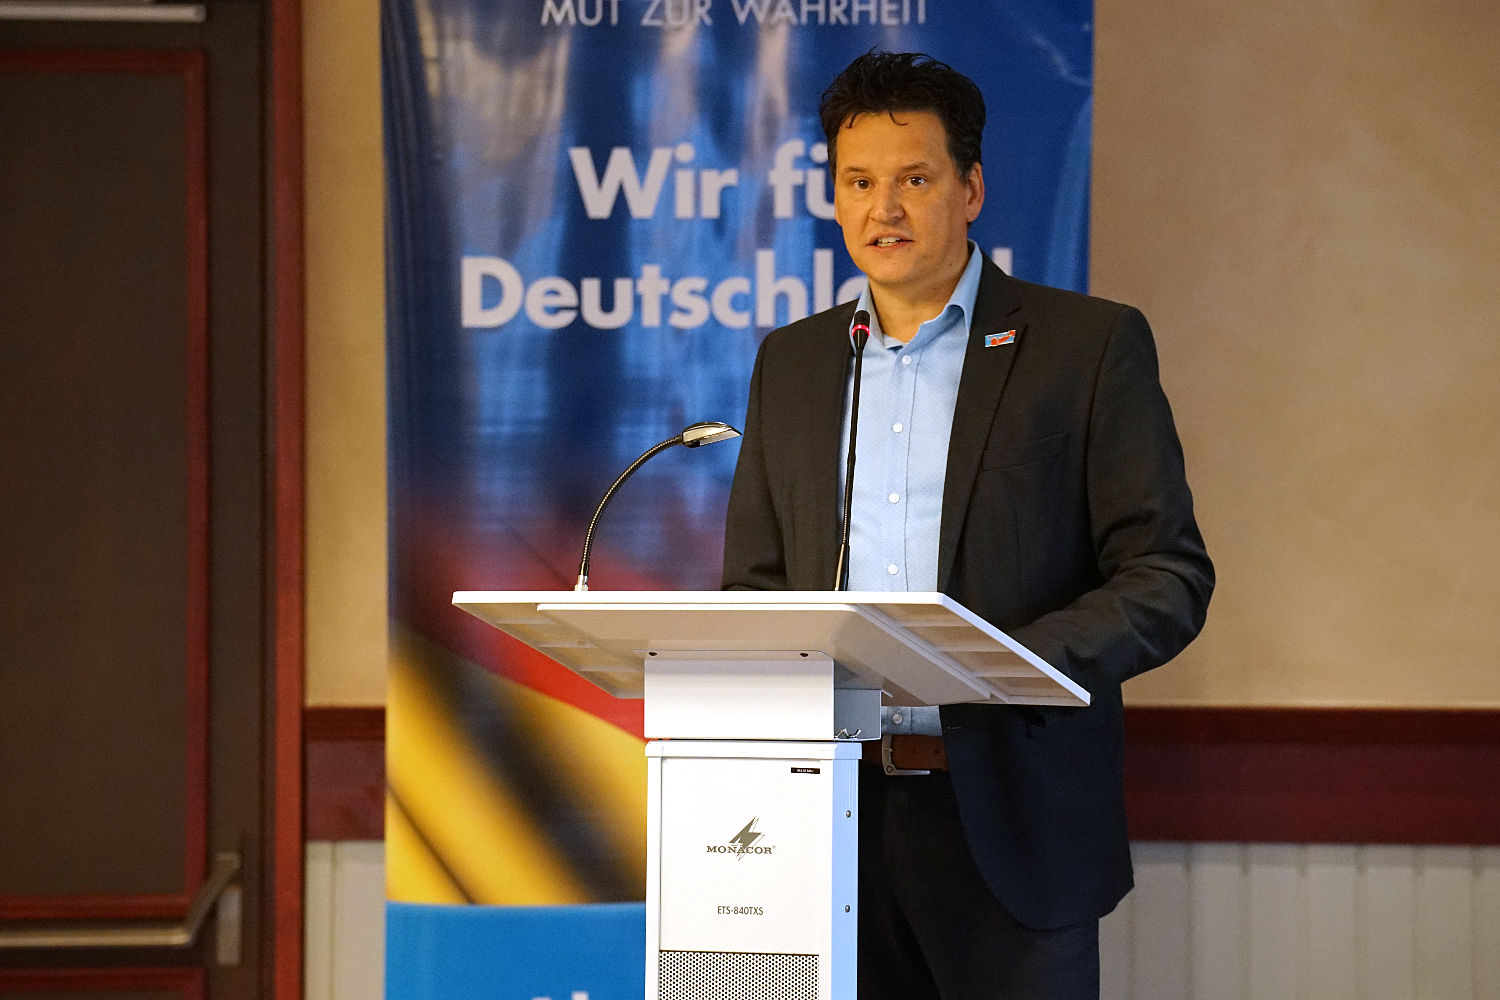 Timo Schmidt, Direktkandidat für den Bezirkstag